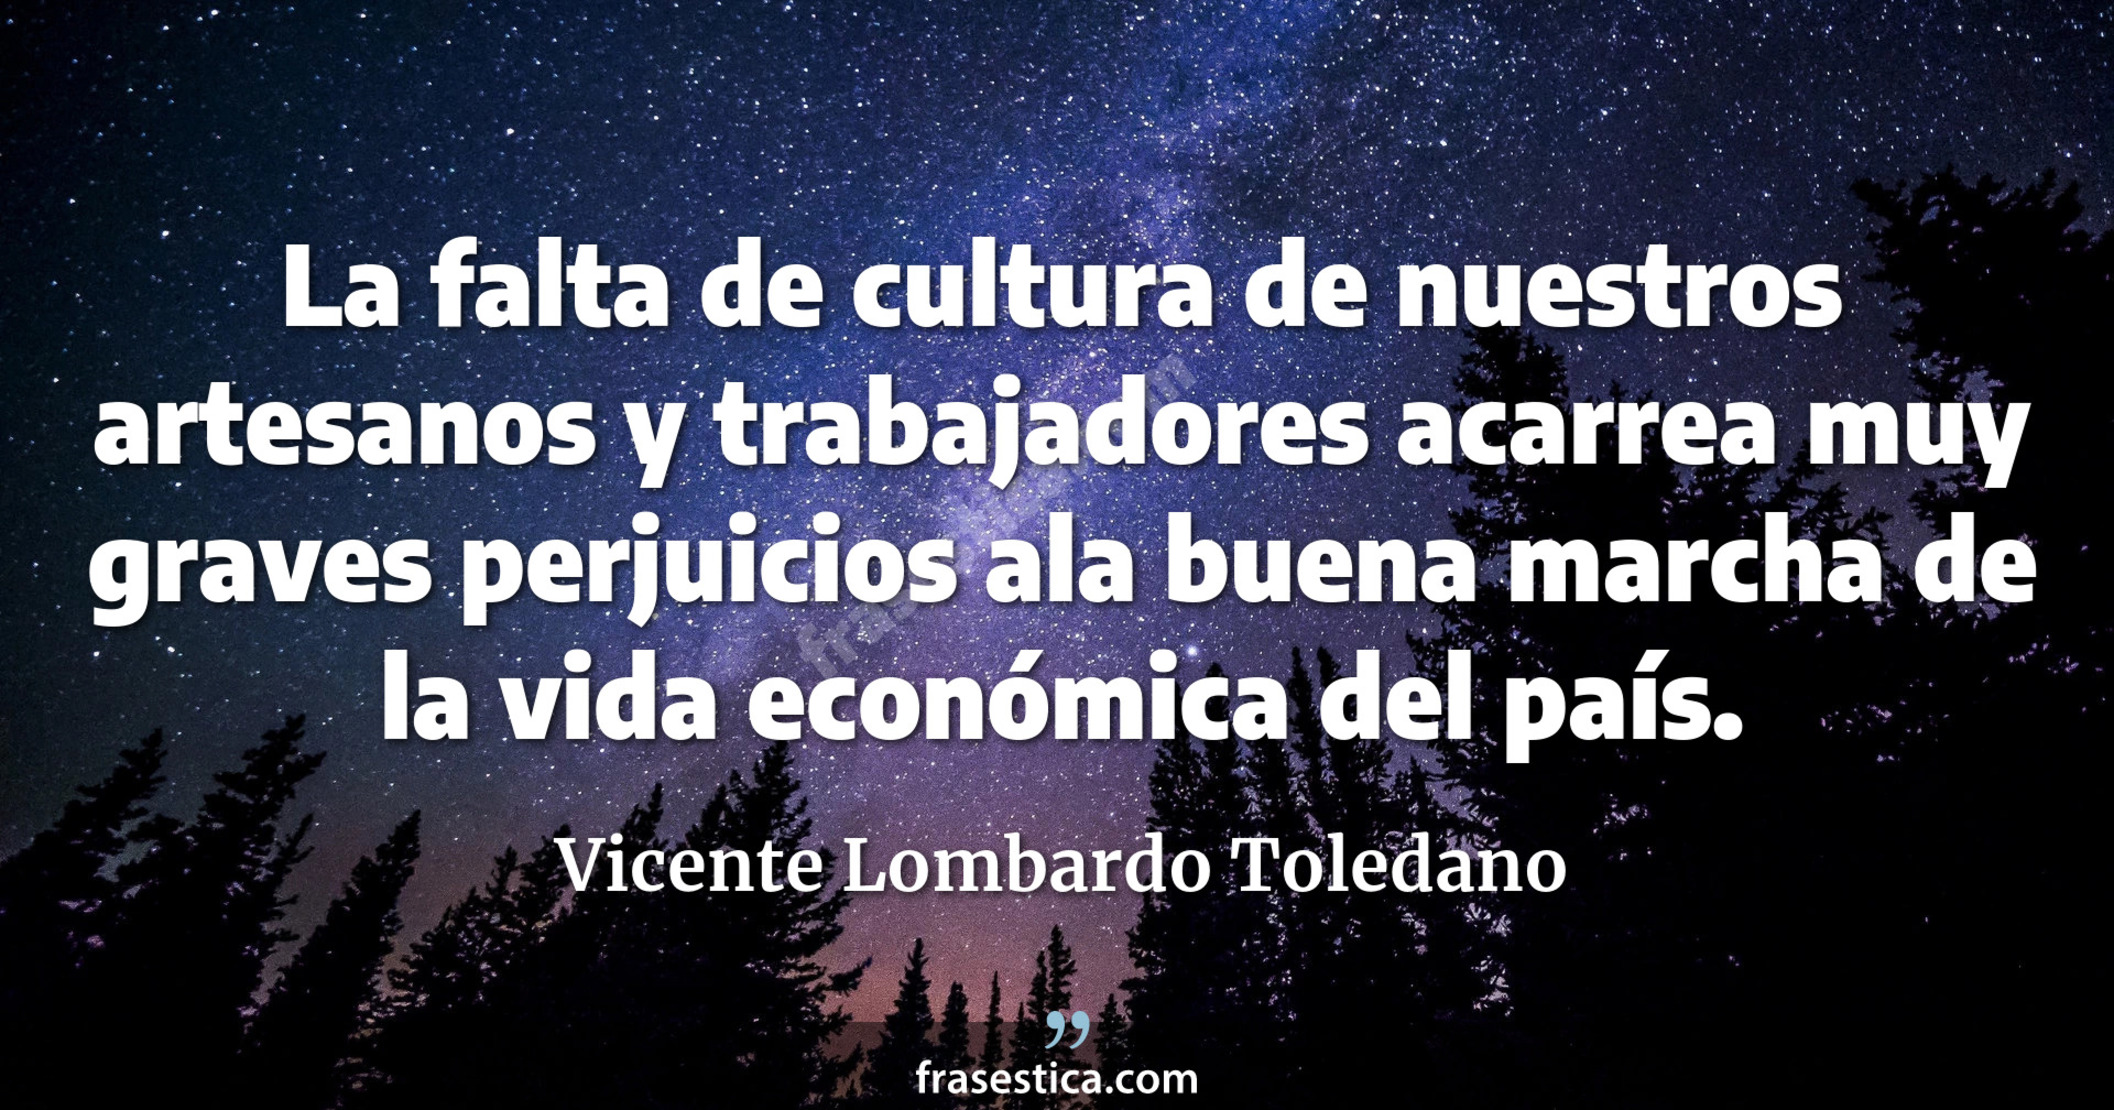 La falta de cultura de nuestros artesanos y trabajadores acarrea muy graves perjuicios ala buena marcha de la vida económica del país. - Vicente Lombardo Toledano